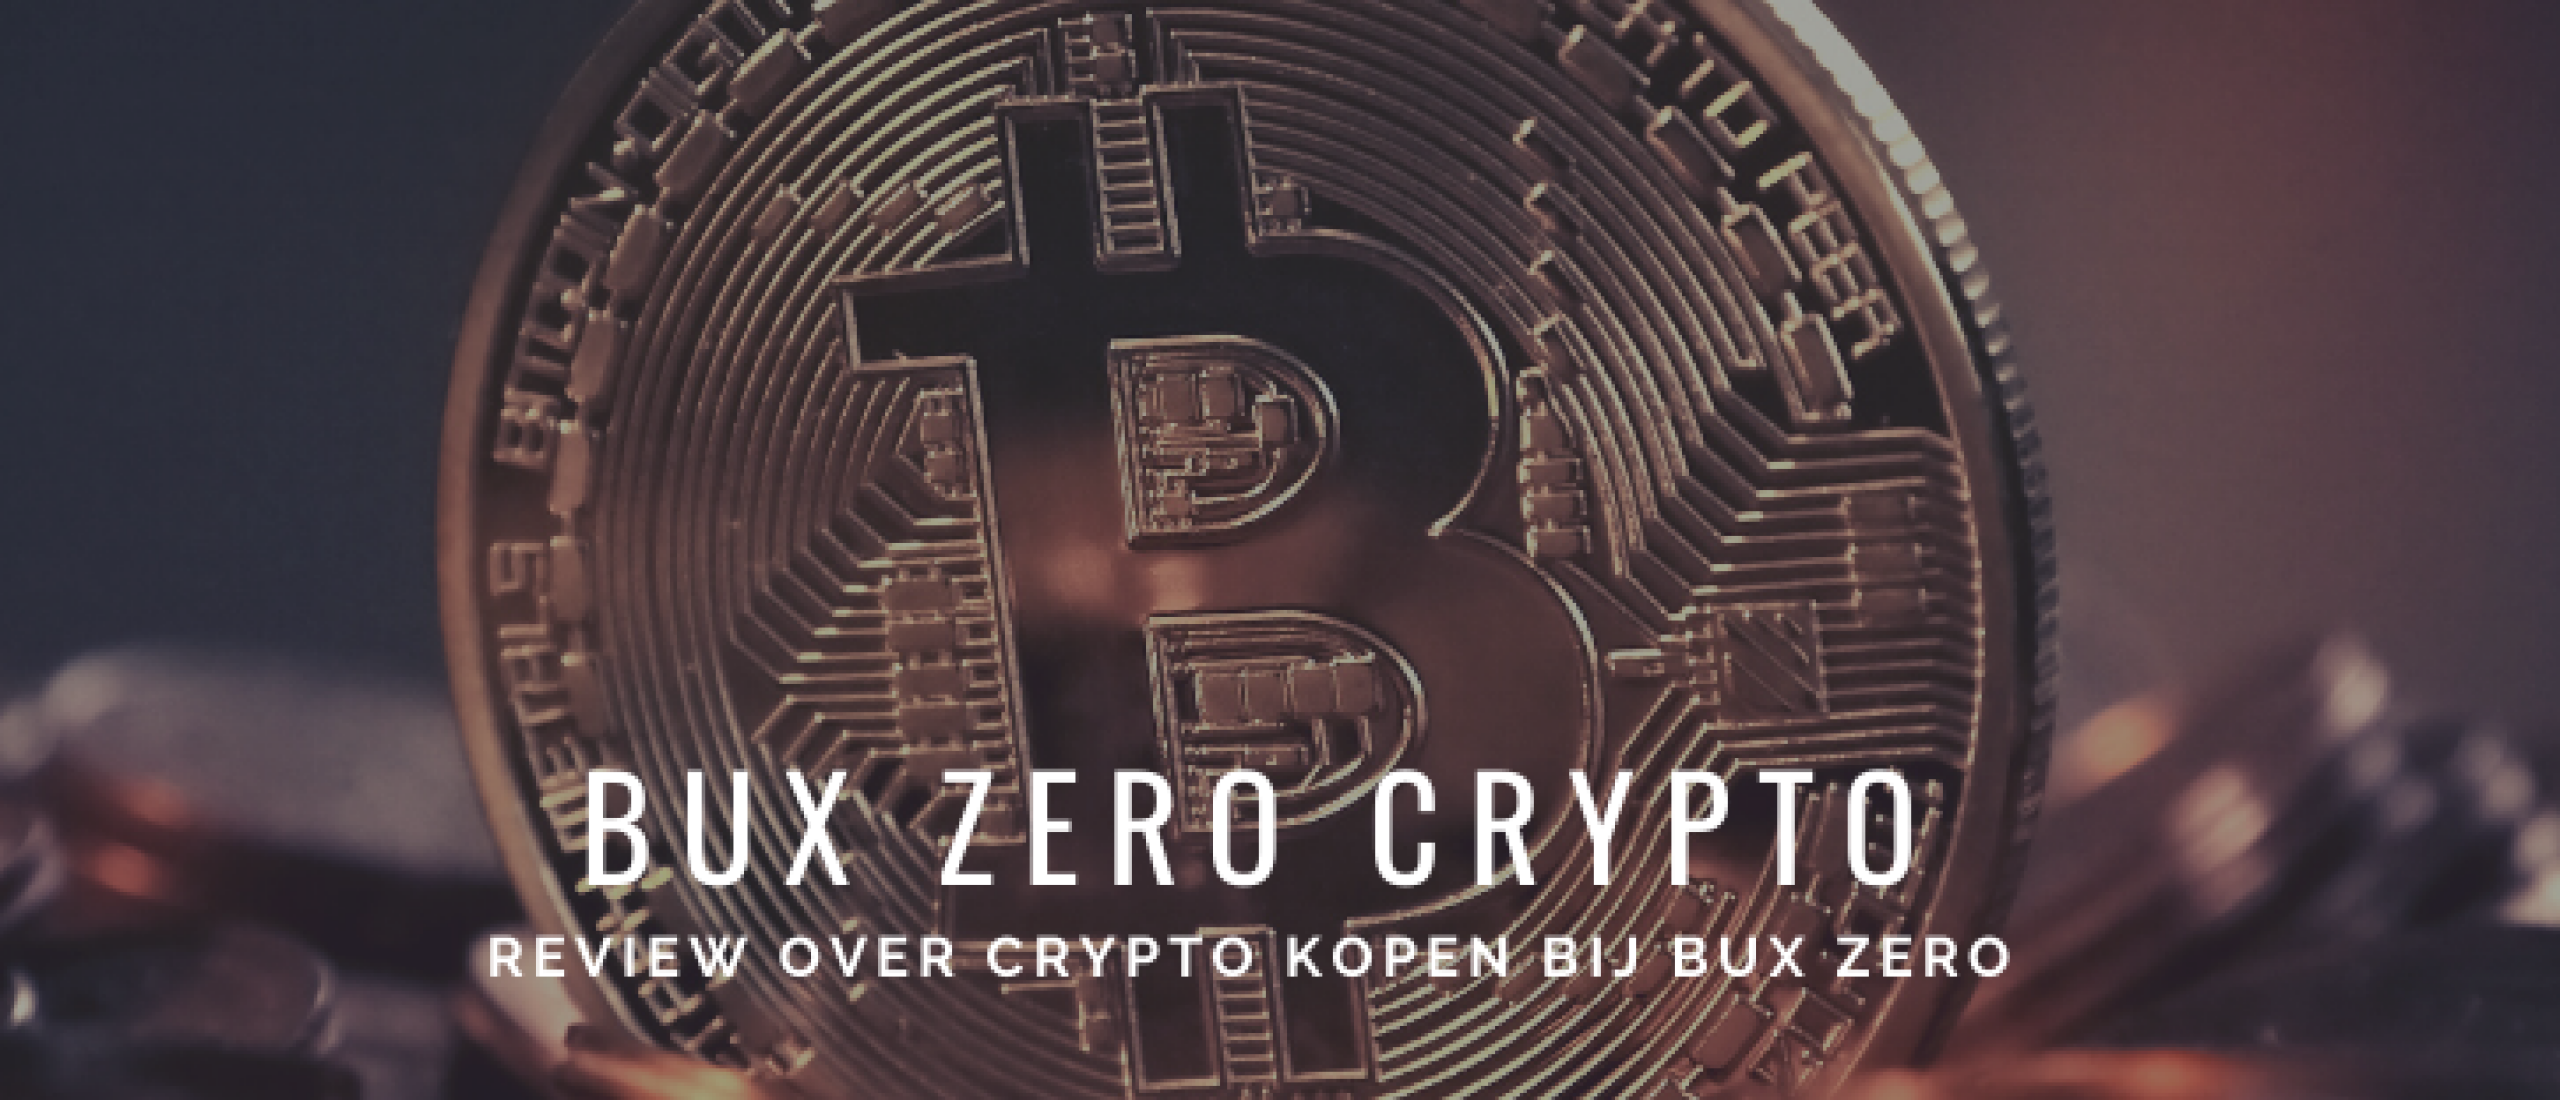 bux-zero-crypto-review